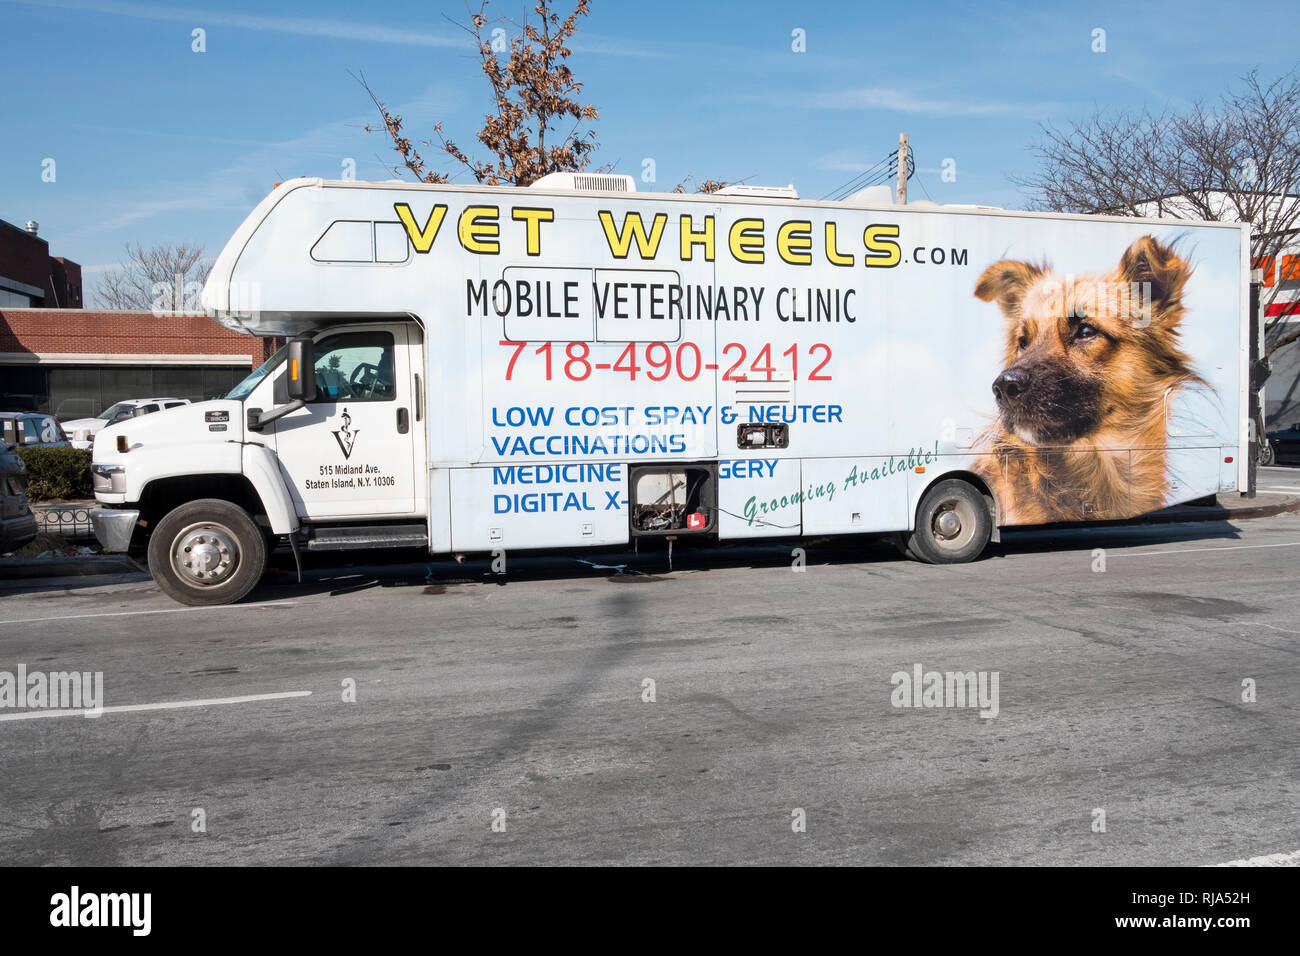 Les roues de l'EFP, une clinique vétérinaire mobile opérant à partir d'un gros camion. Garée sur le Boulevard du Nord à Corona, Queens, New York. Banque D'Images